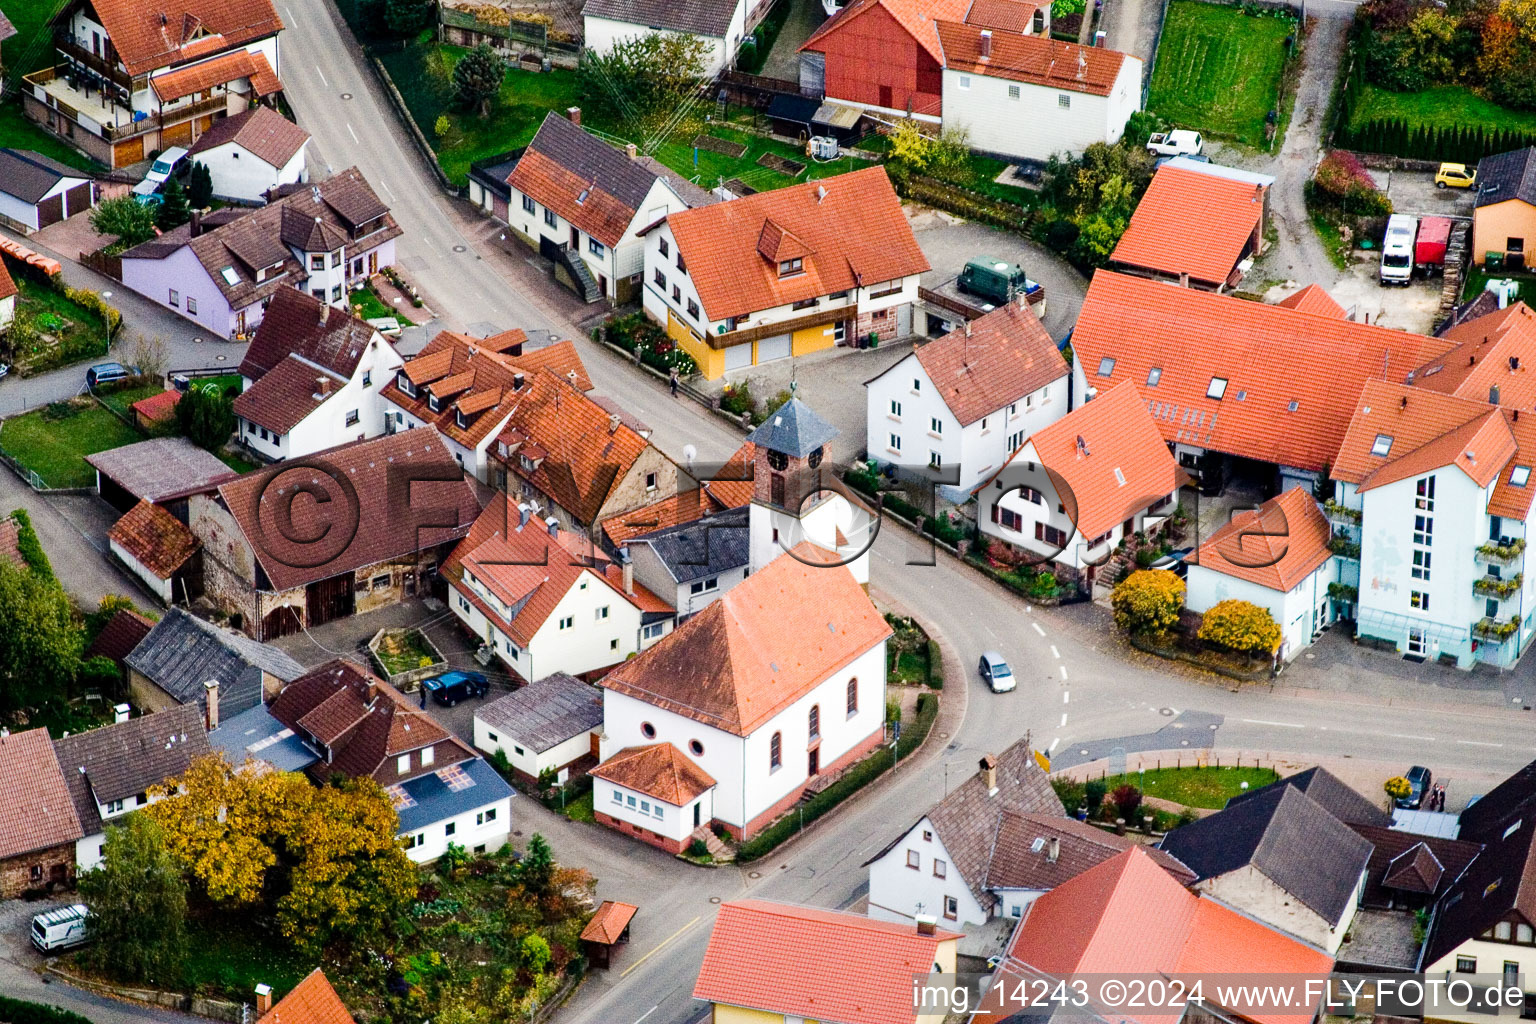 Vue aérienne de Bâtiment d'église au centre du village à Schwanheim dans le département Bade-Wurtemberg, Allemagne